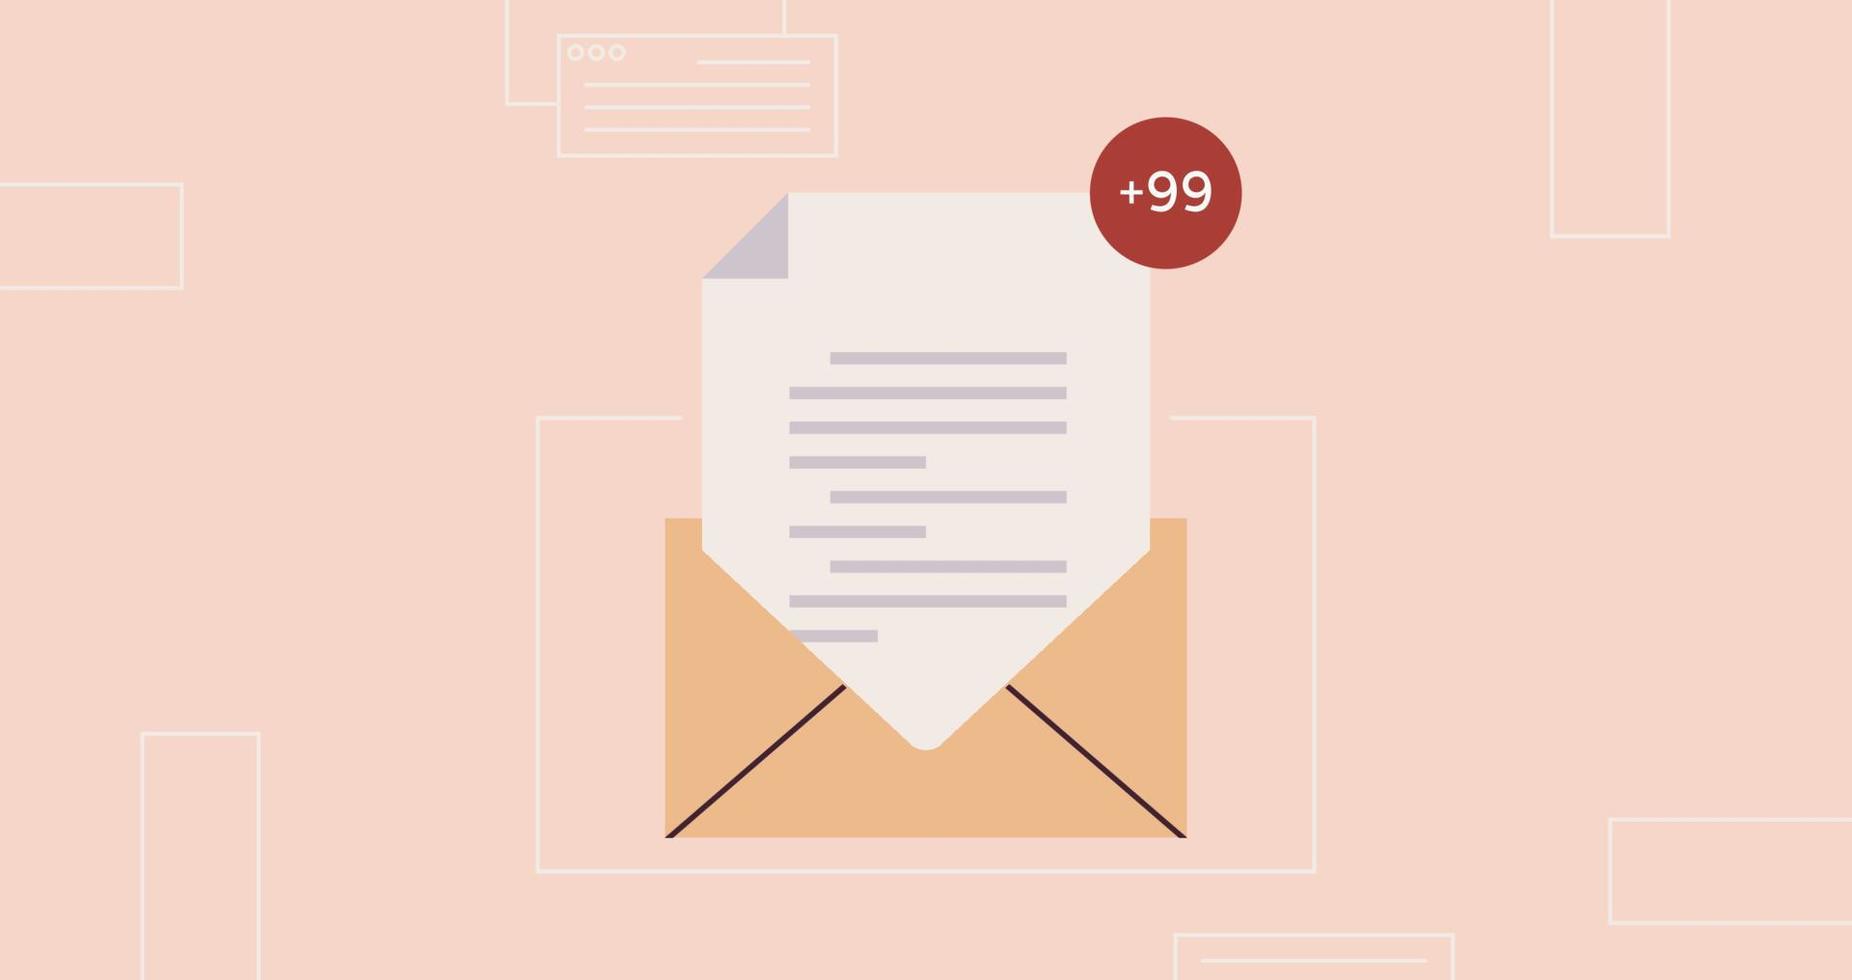 enviar o recibir cartas notificación de mensaje de bandeja de entrada de correo electrónico y nueva ilustración de vector plano de comunicación comercial de correo no leído.